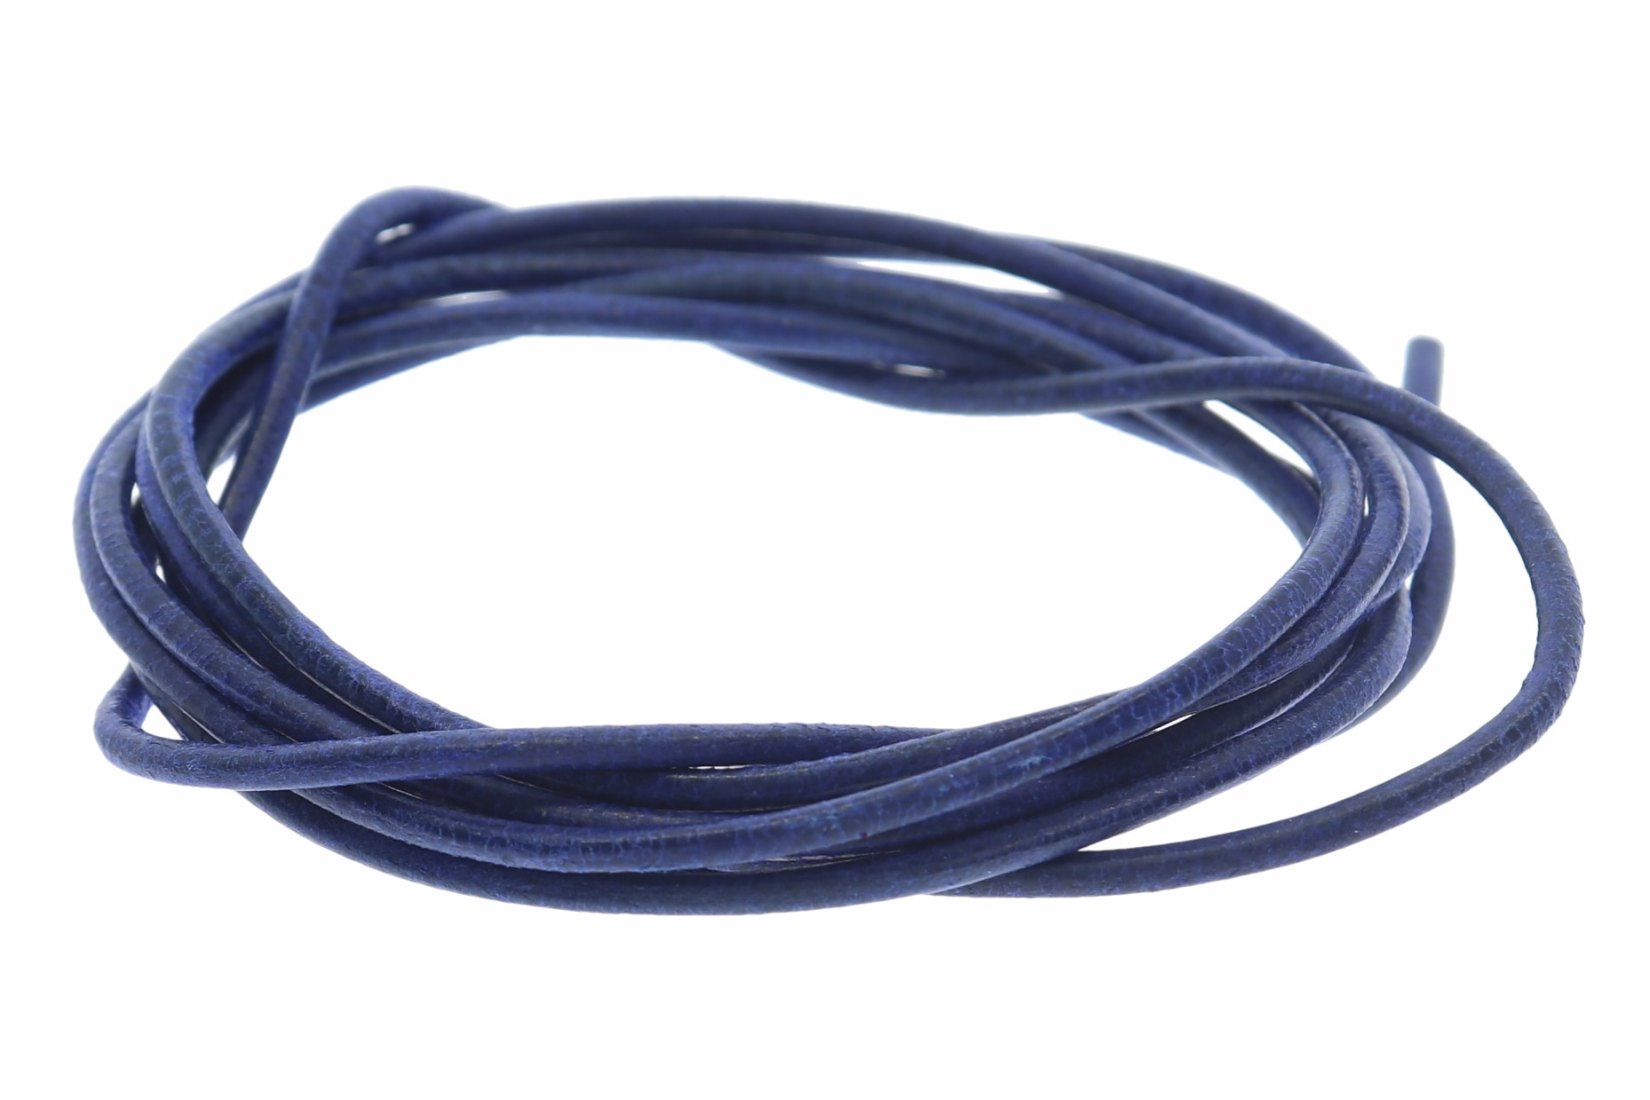 Lederband königs blau -  Lederbänder Lederriemen Lederschnur 1.5mm Ø - 100cm L110